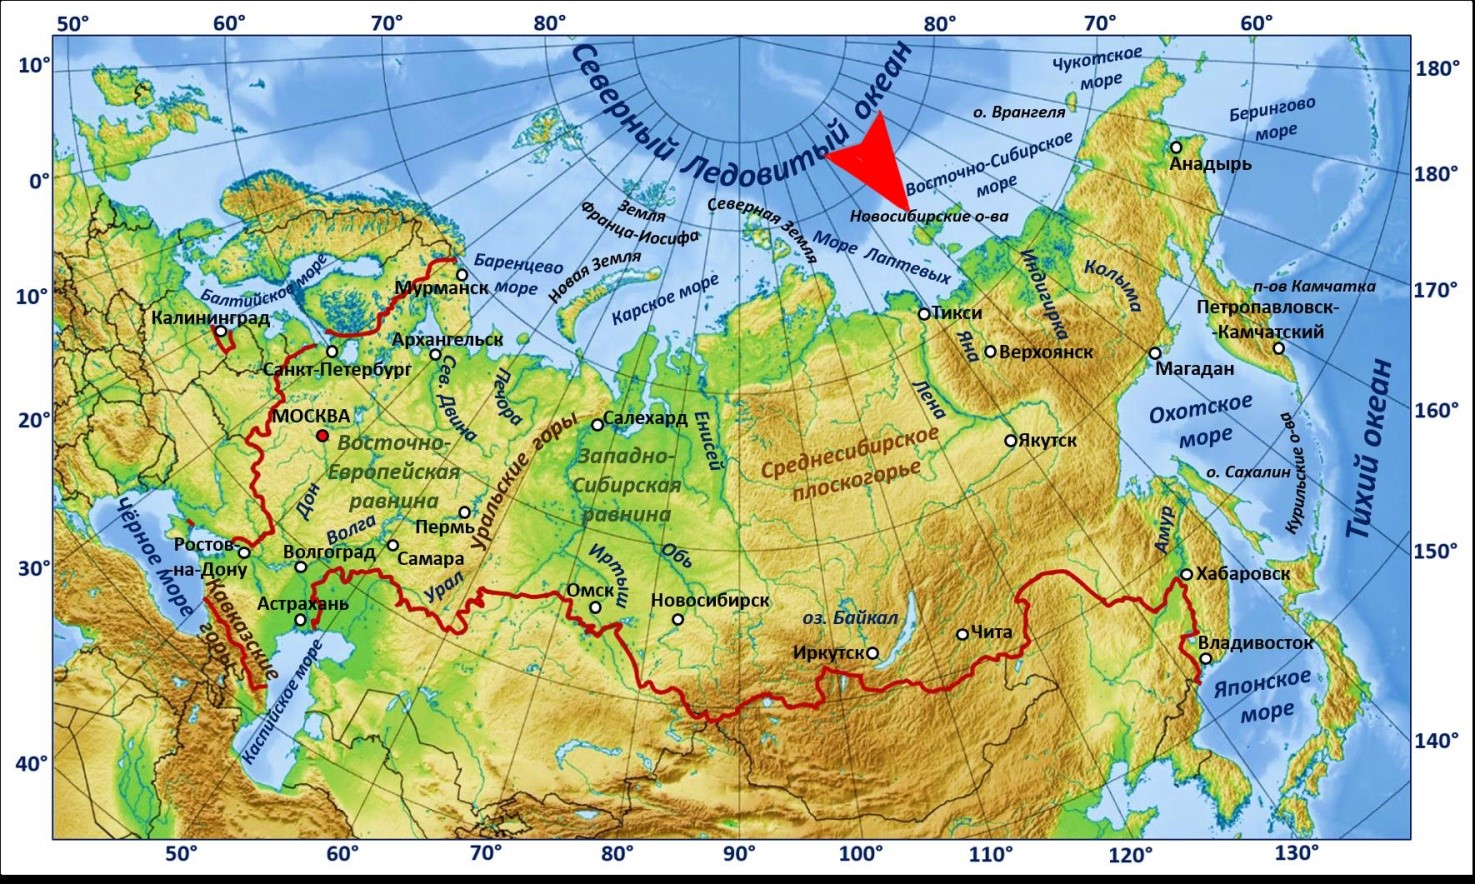 Чукотское море на карте мира